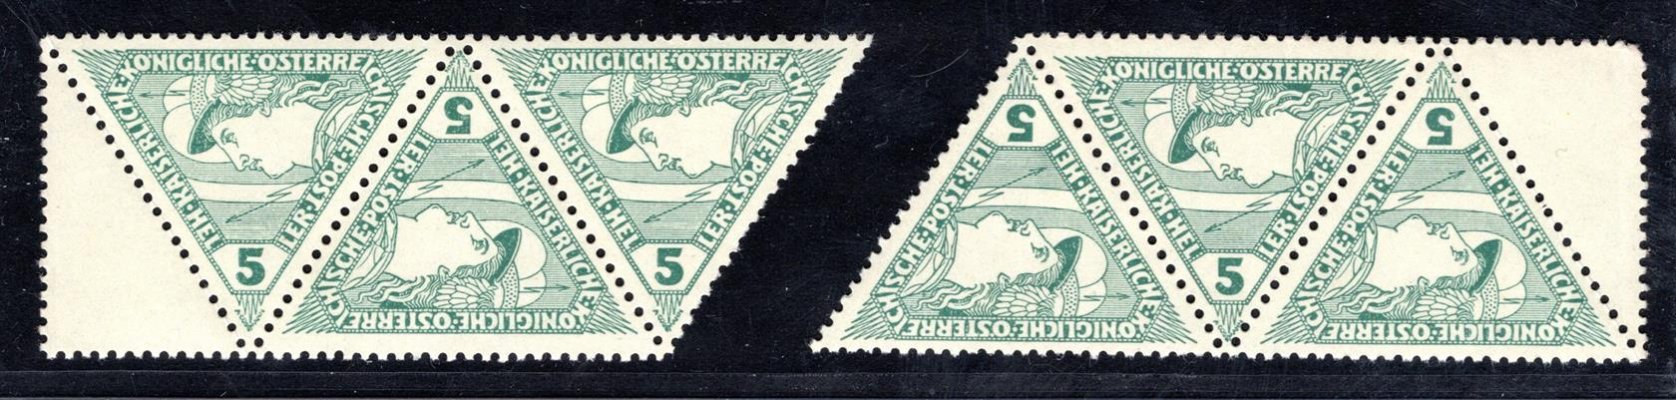 Rakousko, Mi. 218, trojúhelník, levá a pravá krajová třípáska s 1/2 kupónem, zelená 5 h